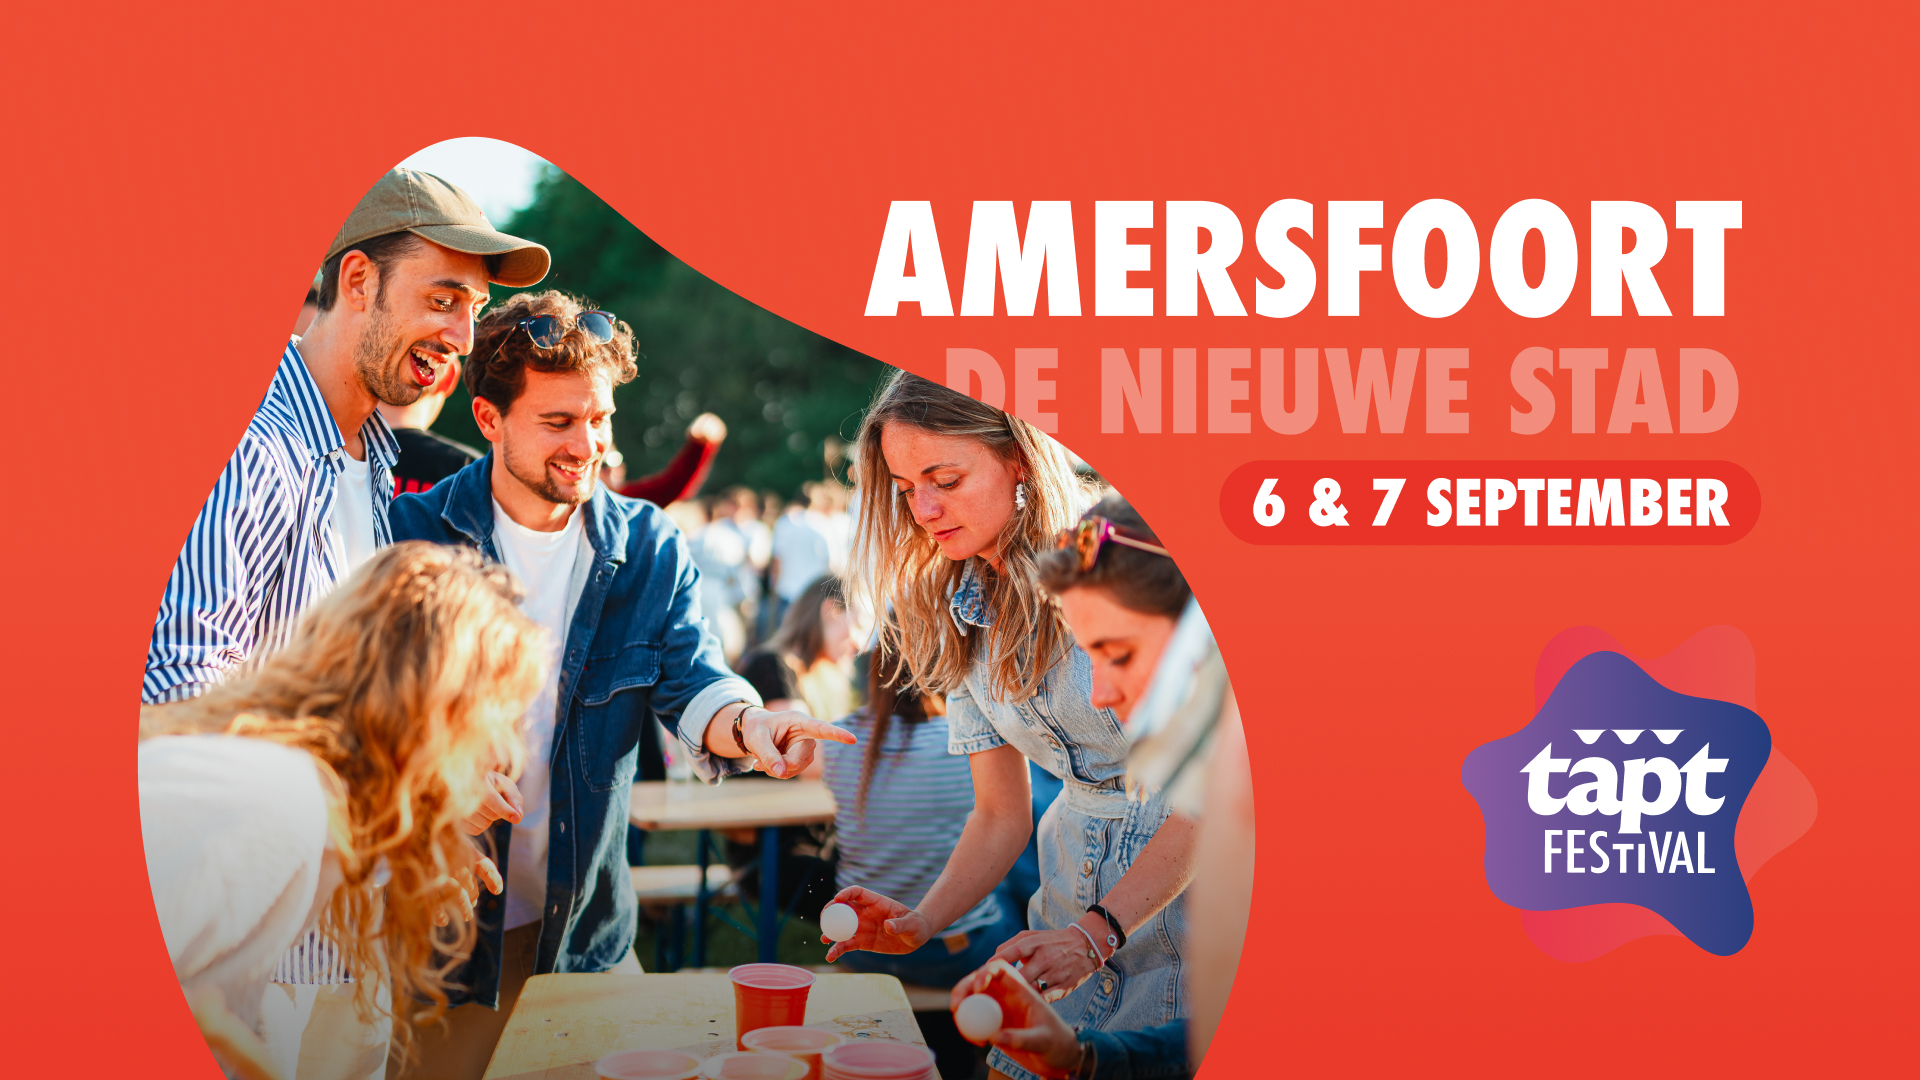 TAPT Festival Amersfoort